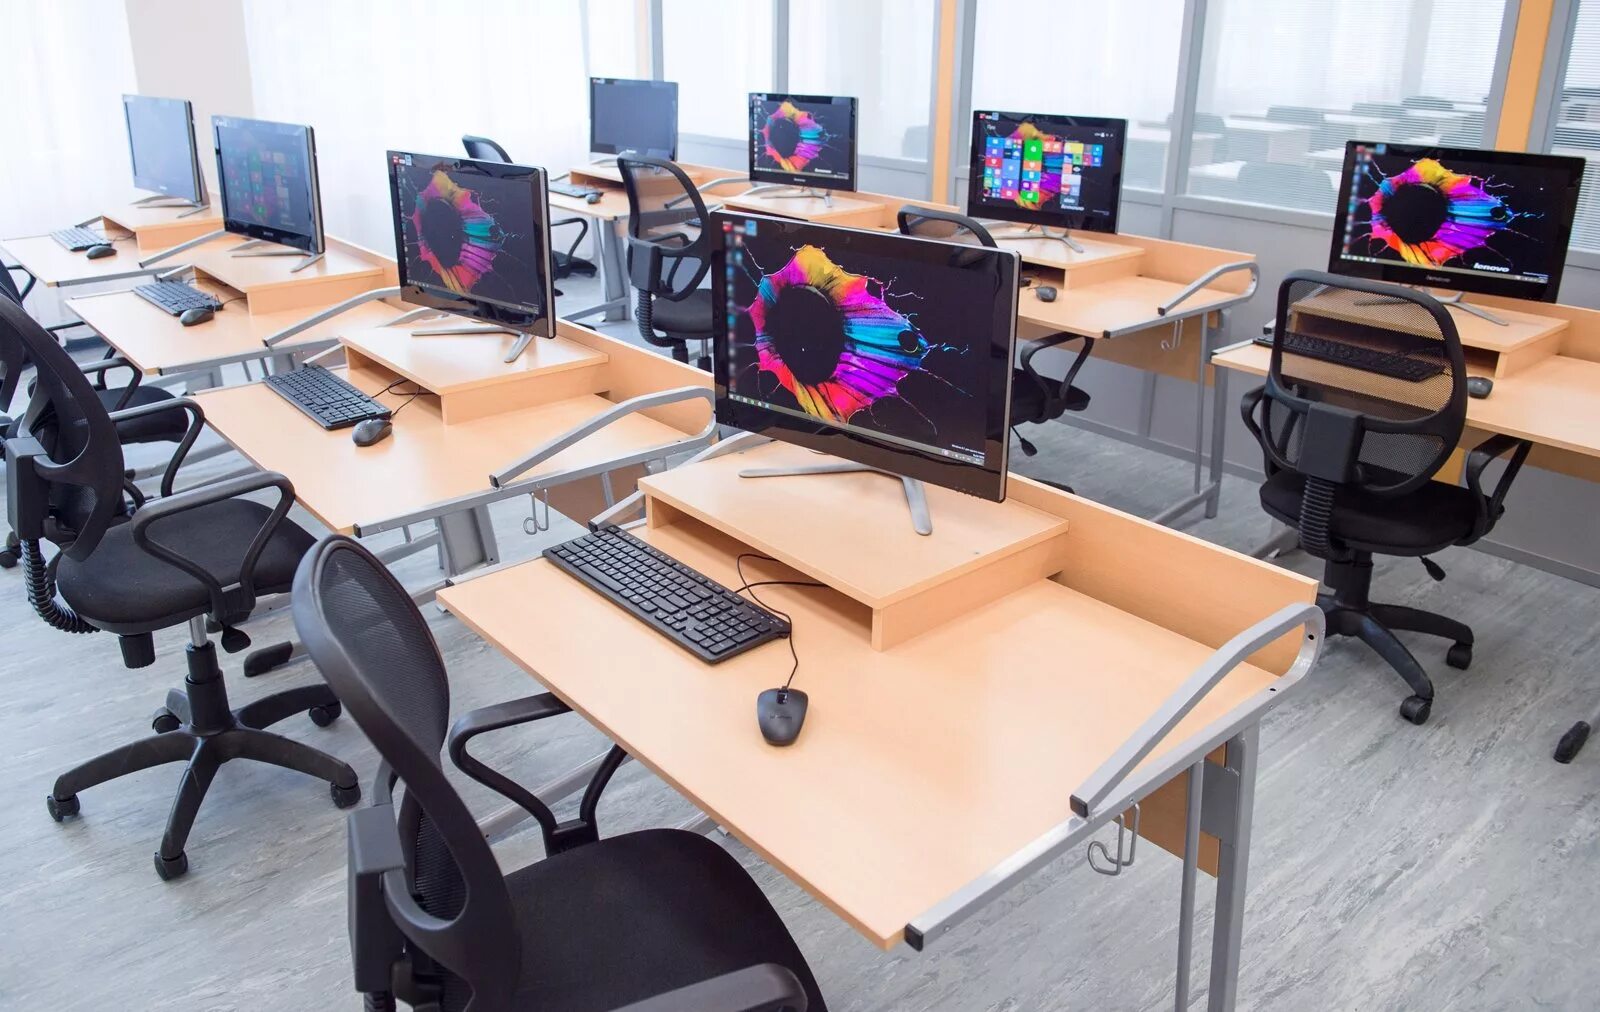 В классе установили новый компьютер. Столы для компьютерного класса. Современный компьютерный класс. Компьютерный кабинет. Стол для компьютерного класса в школе.